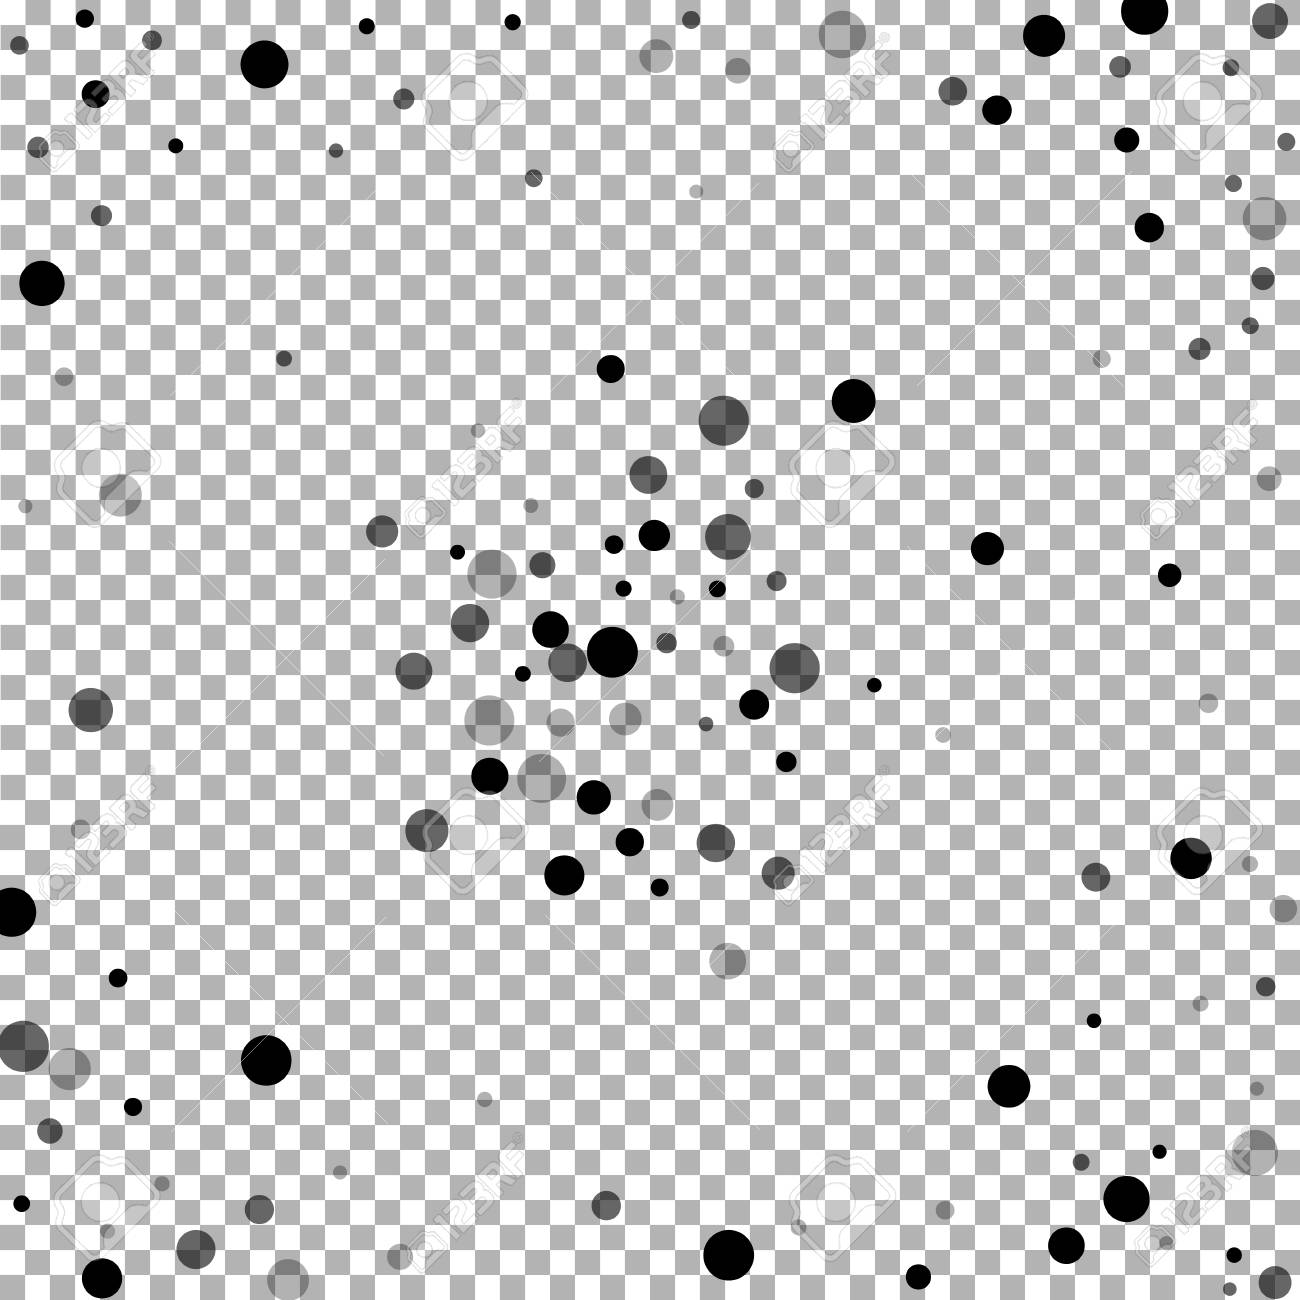 Scattered Random Black Dots Dark Points Dispersion On Transparent